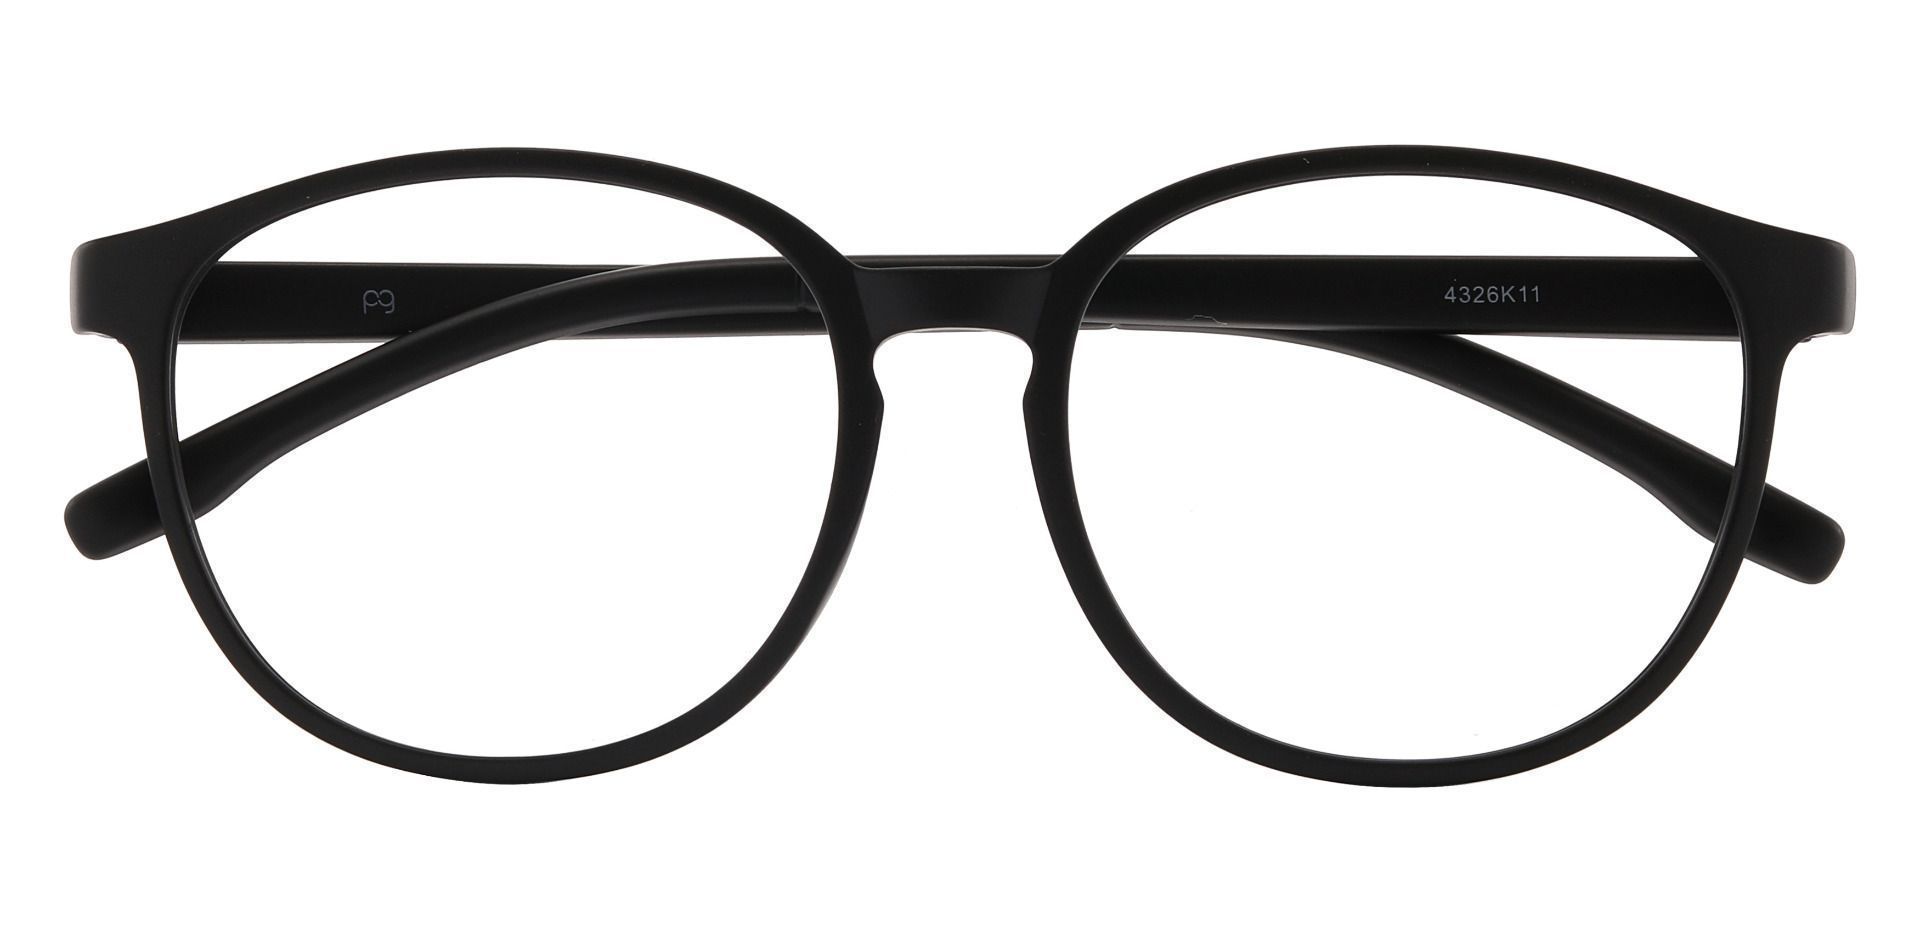 Molasses Oval Prescription Glasses - Black